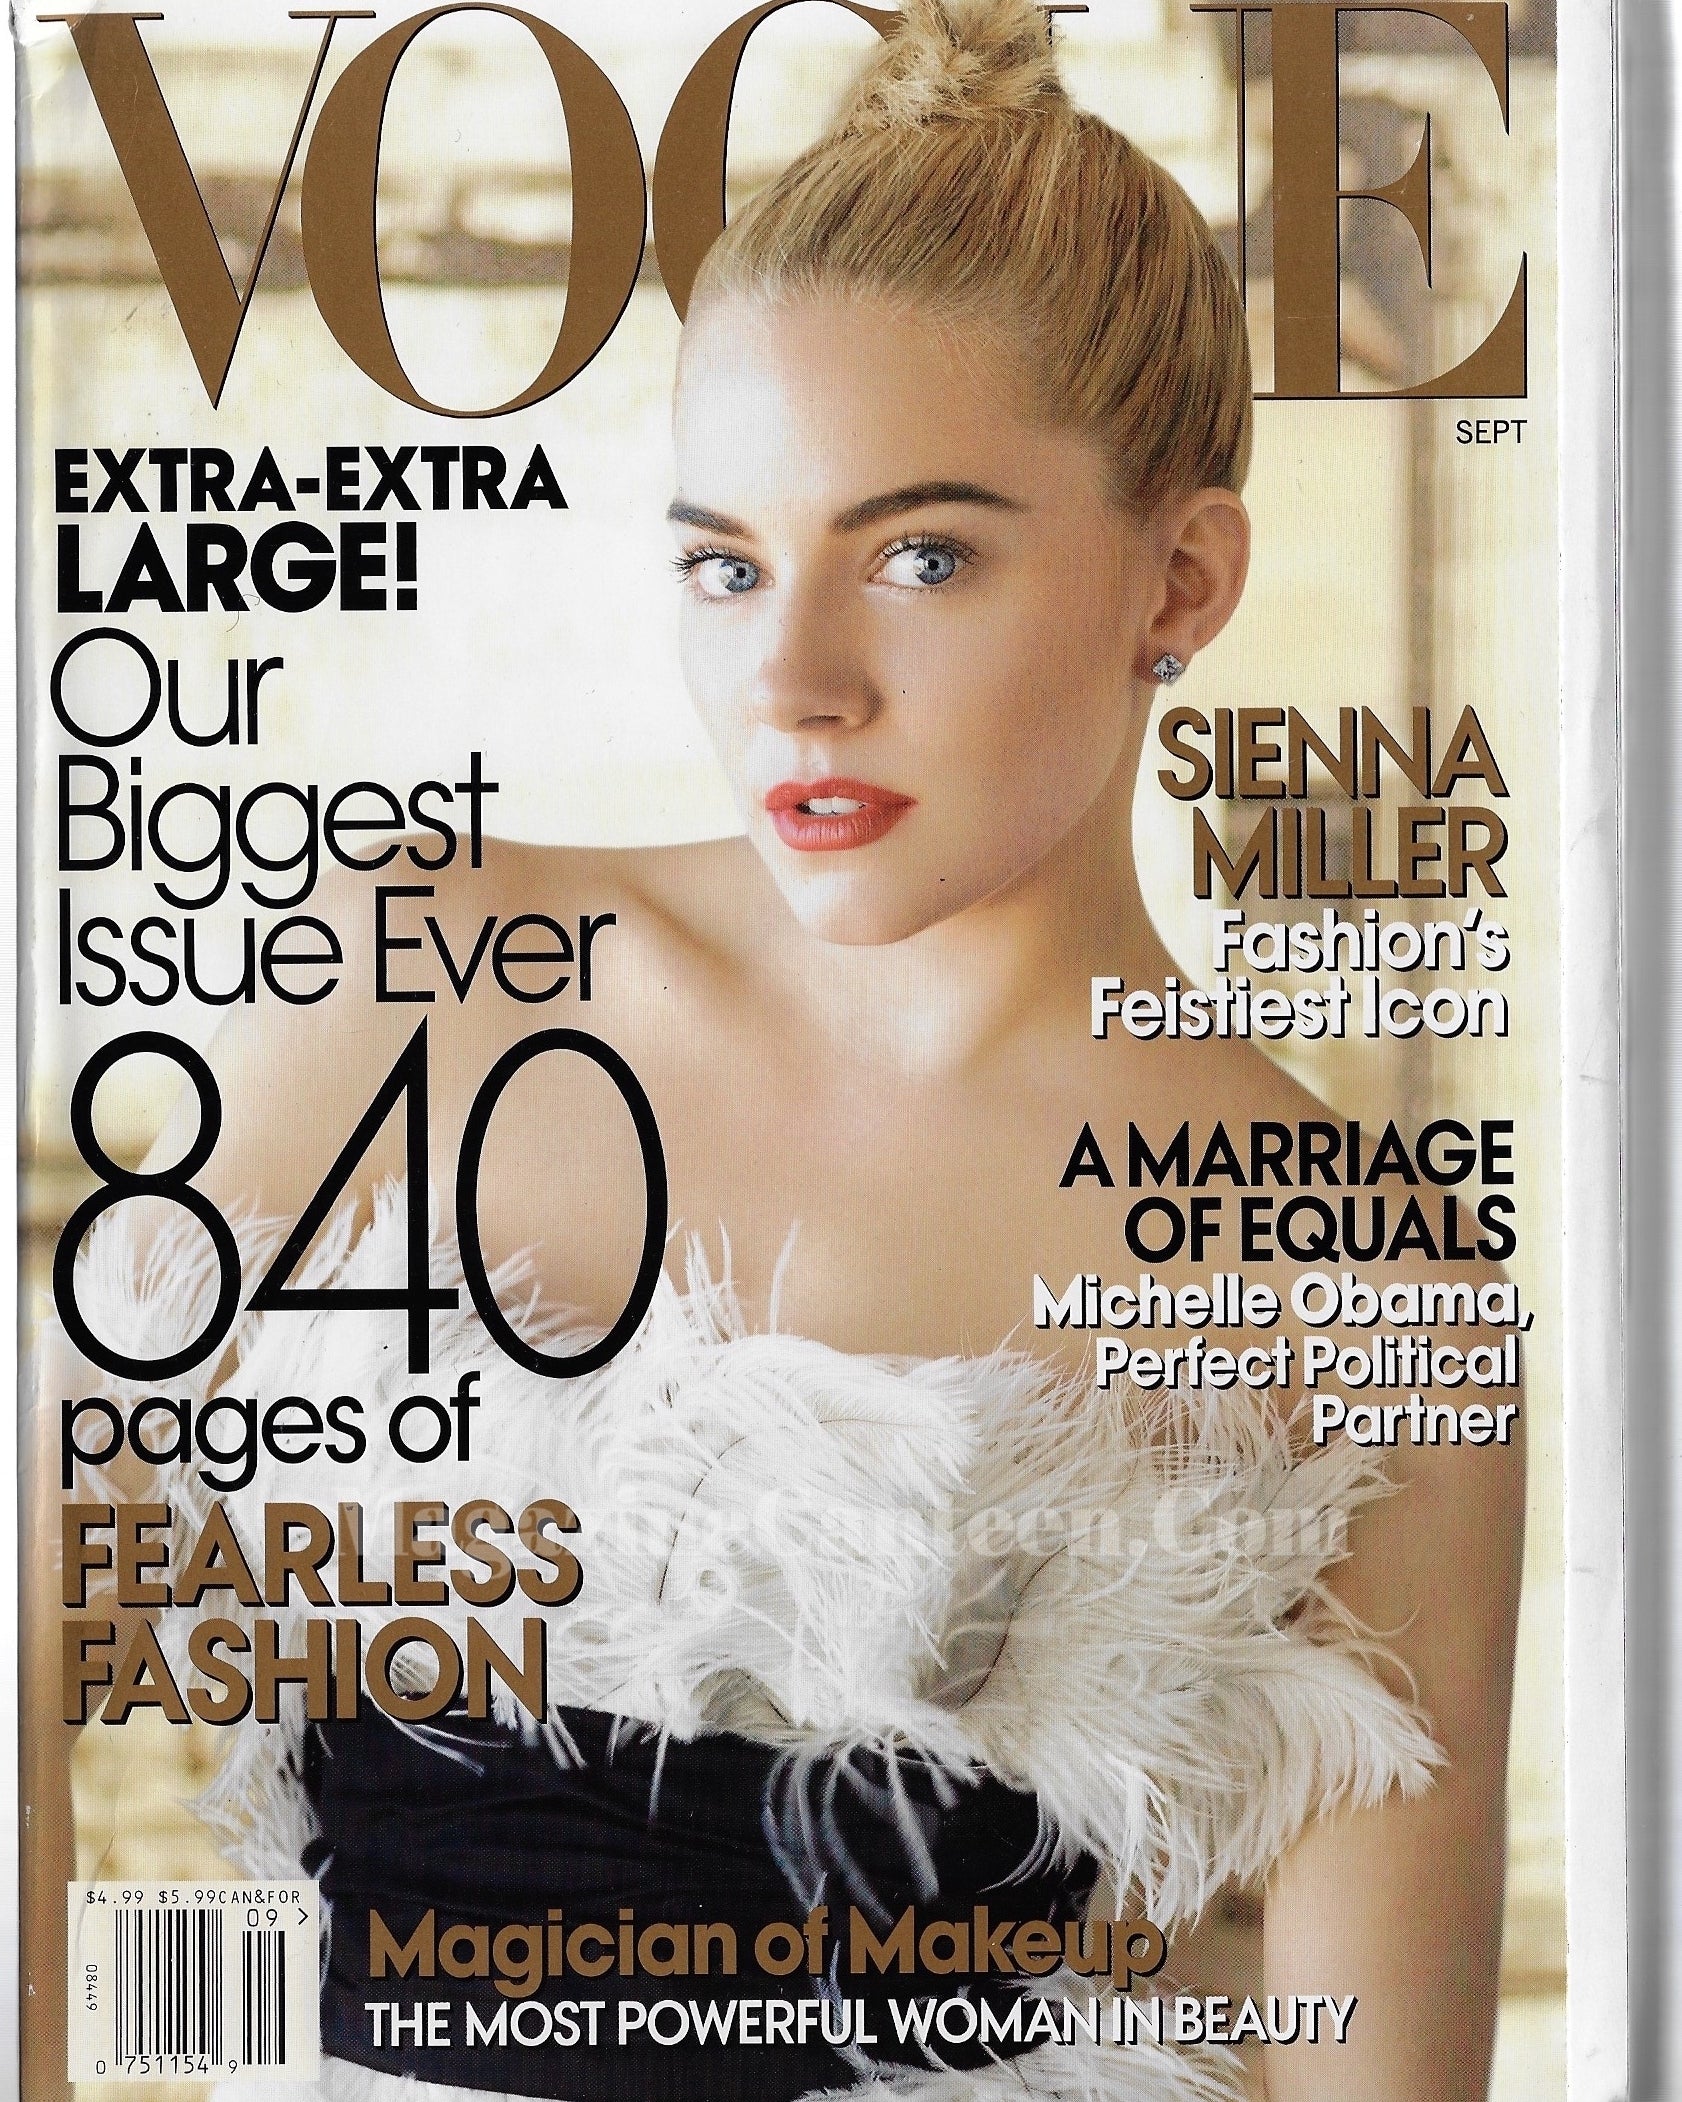 Vogue USA Magazine September 2007 - Sienna Miller